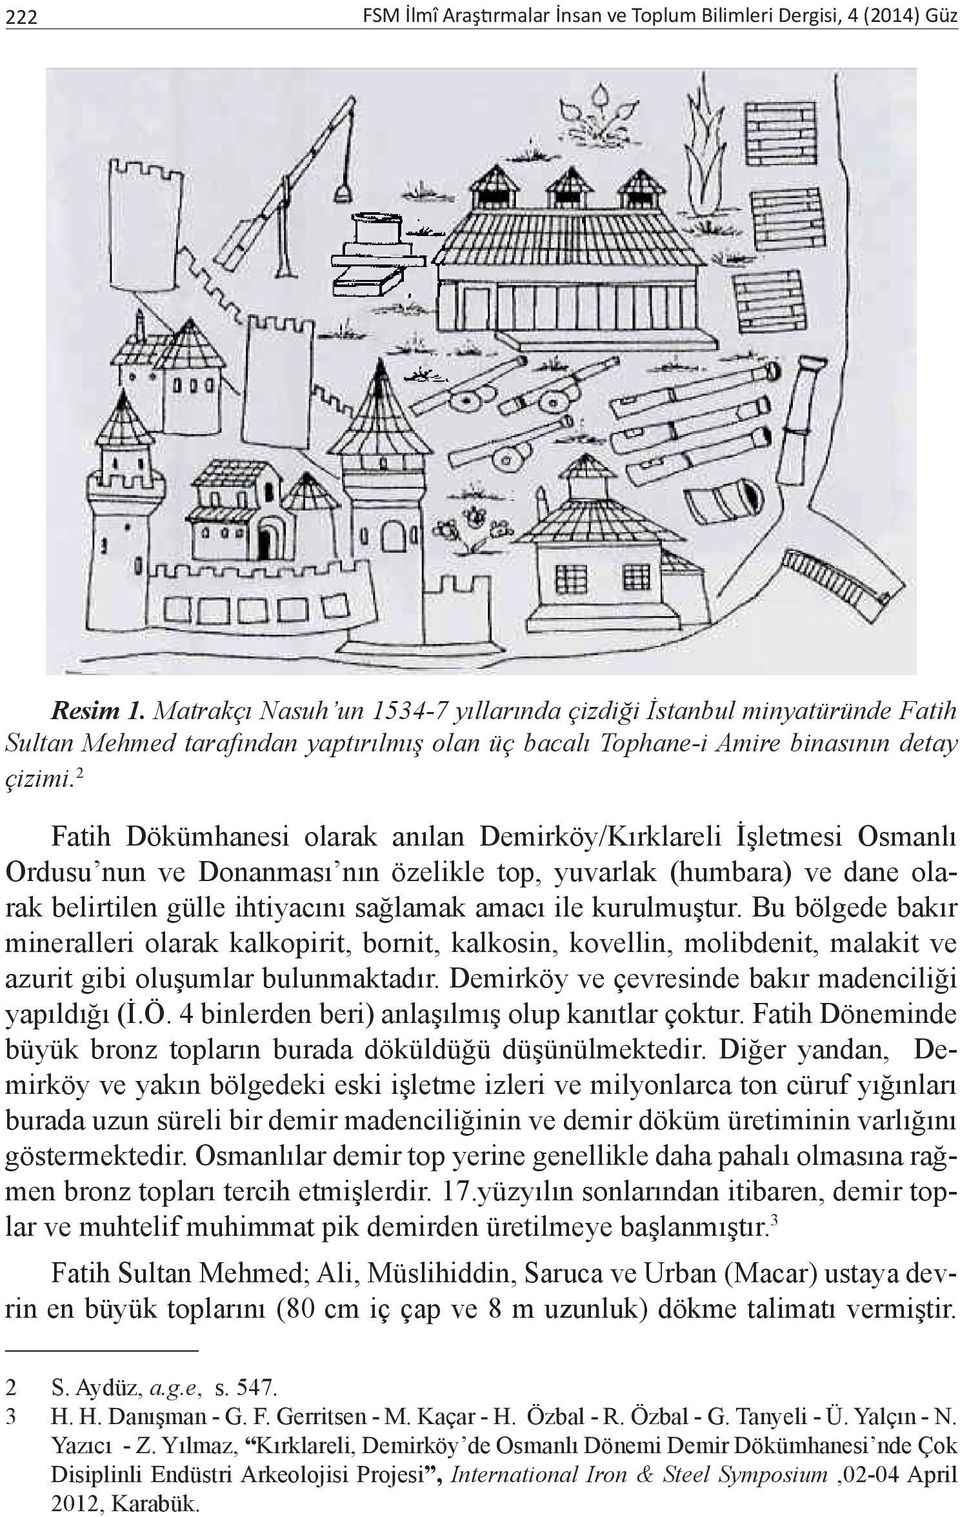 2 Fatih Dökümhanesi olarak anılan Demirköy/Kırklareli İşletmesi Osmanlı Ordusu nun ve Donanması nın özelikle top, yuvarlak (humbara) ve dane olarak belirtilen gülle ihtiyacını sağlamak amacı ile